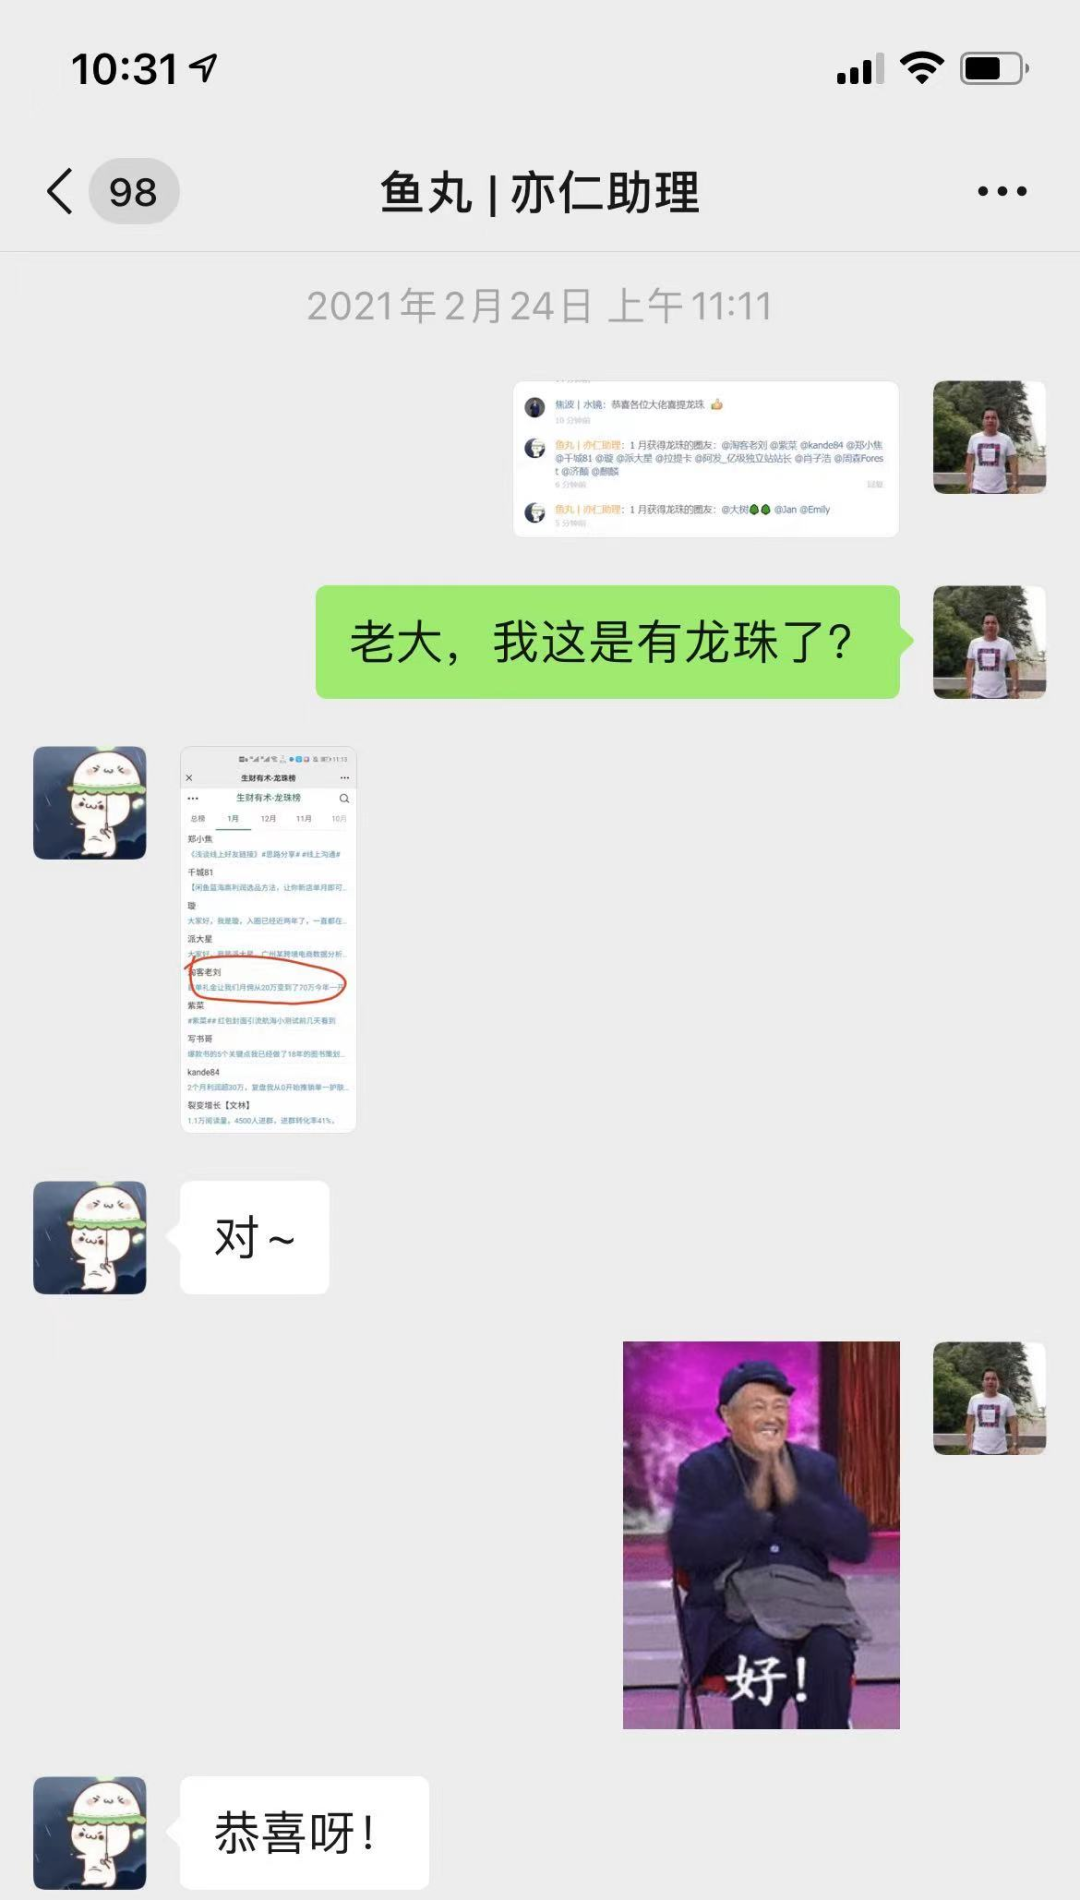 <a href='https://www.zhouxiaohui.cn/taobaoke/
' target='_blank'>淘客</a>如何找到品牌首单礼金0元购免单的商品-第1张图片-周小辉博客